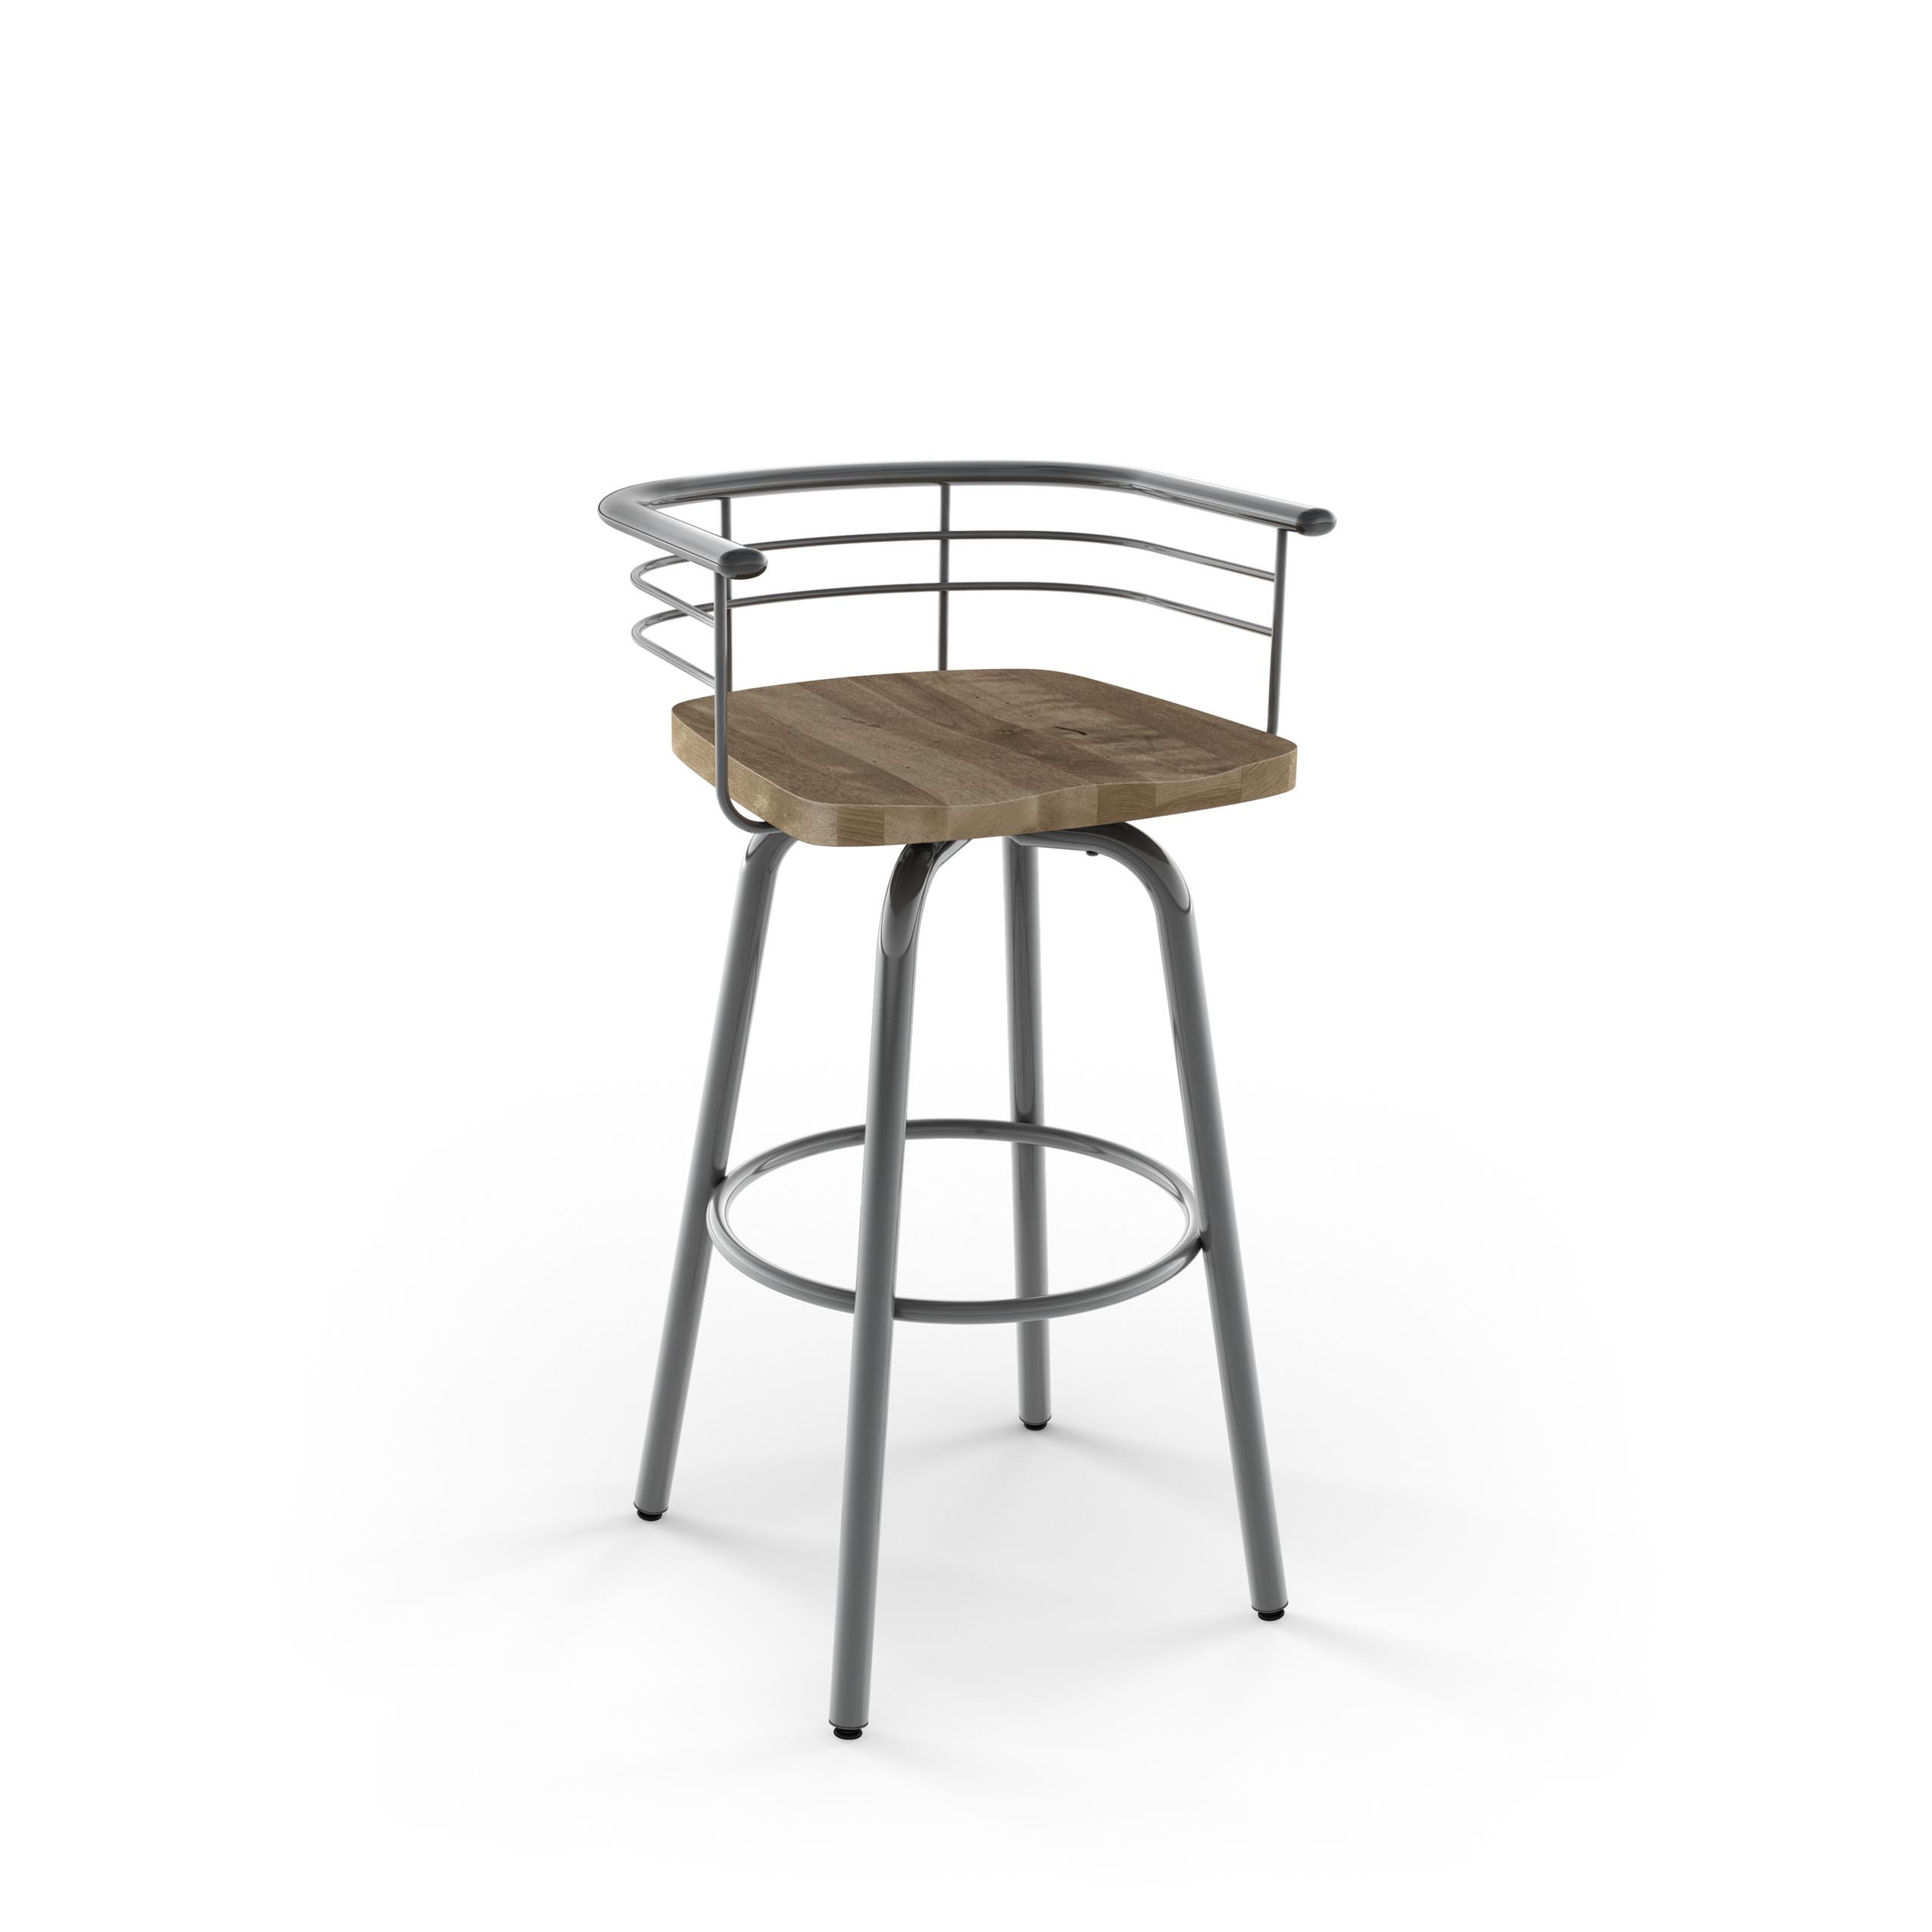 aluminum bar stools without backs photo - 10